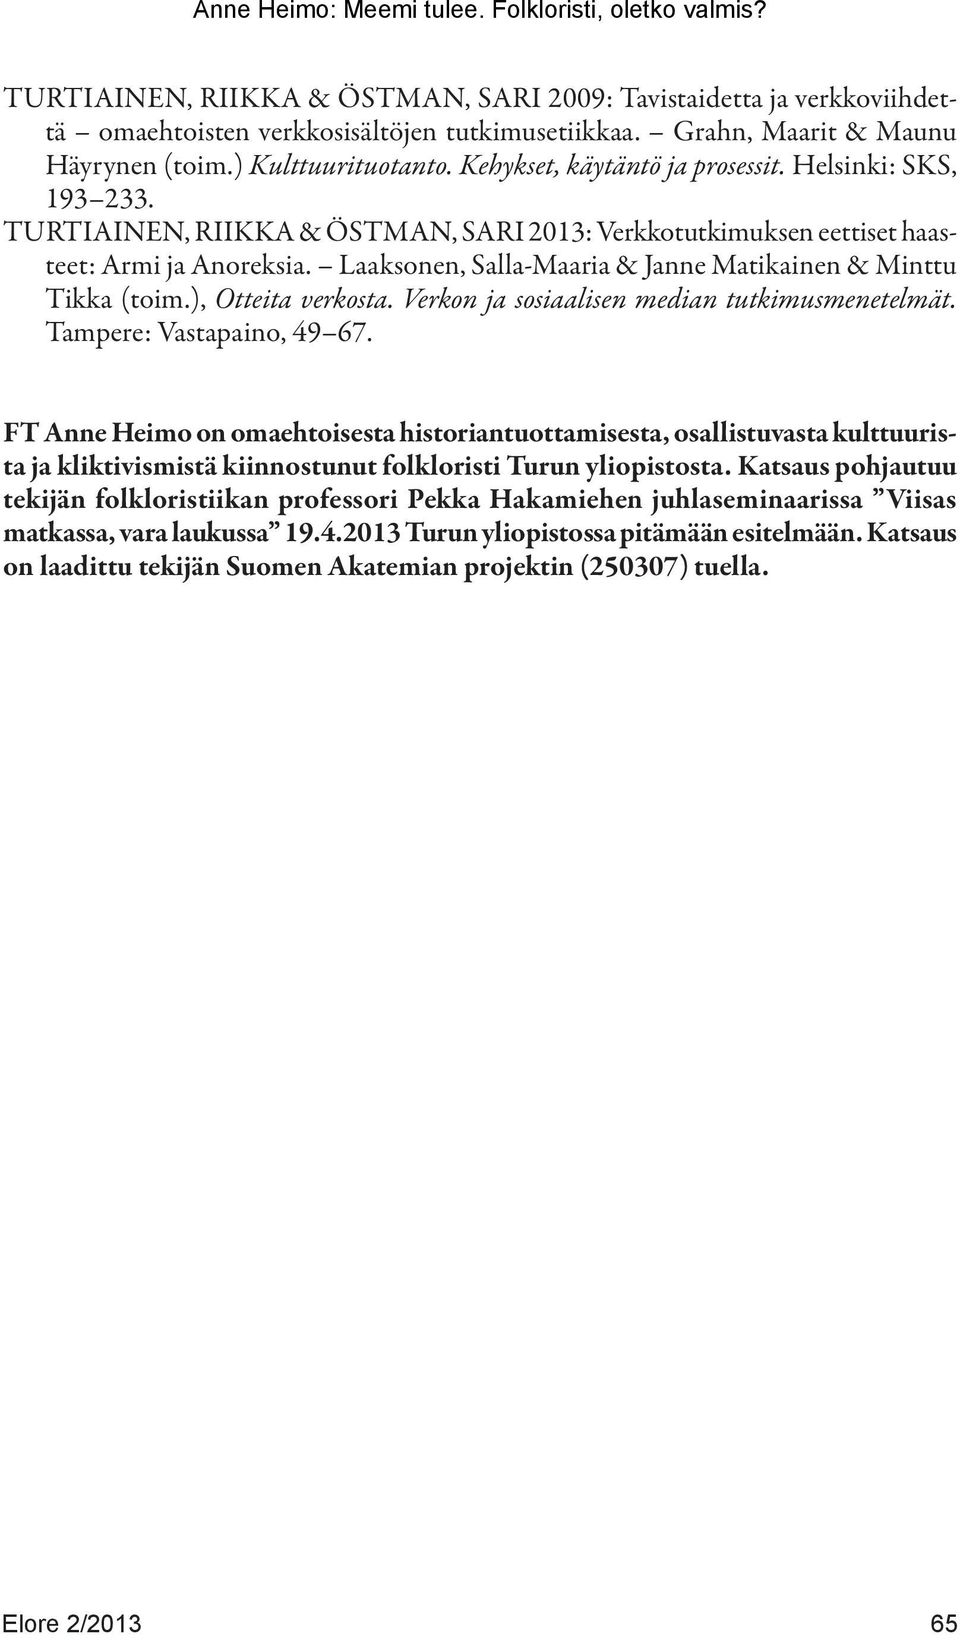 Laaksonen, Salla-Maaria & Janne Matikainen & Minttu Tikka (toim.), Otteita verkosta. Verkon ja sosiaalisen median tutkimusmenetelmät. Tampere: Vastapaino, 49 67.